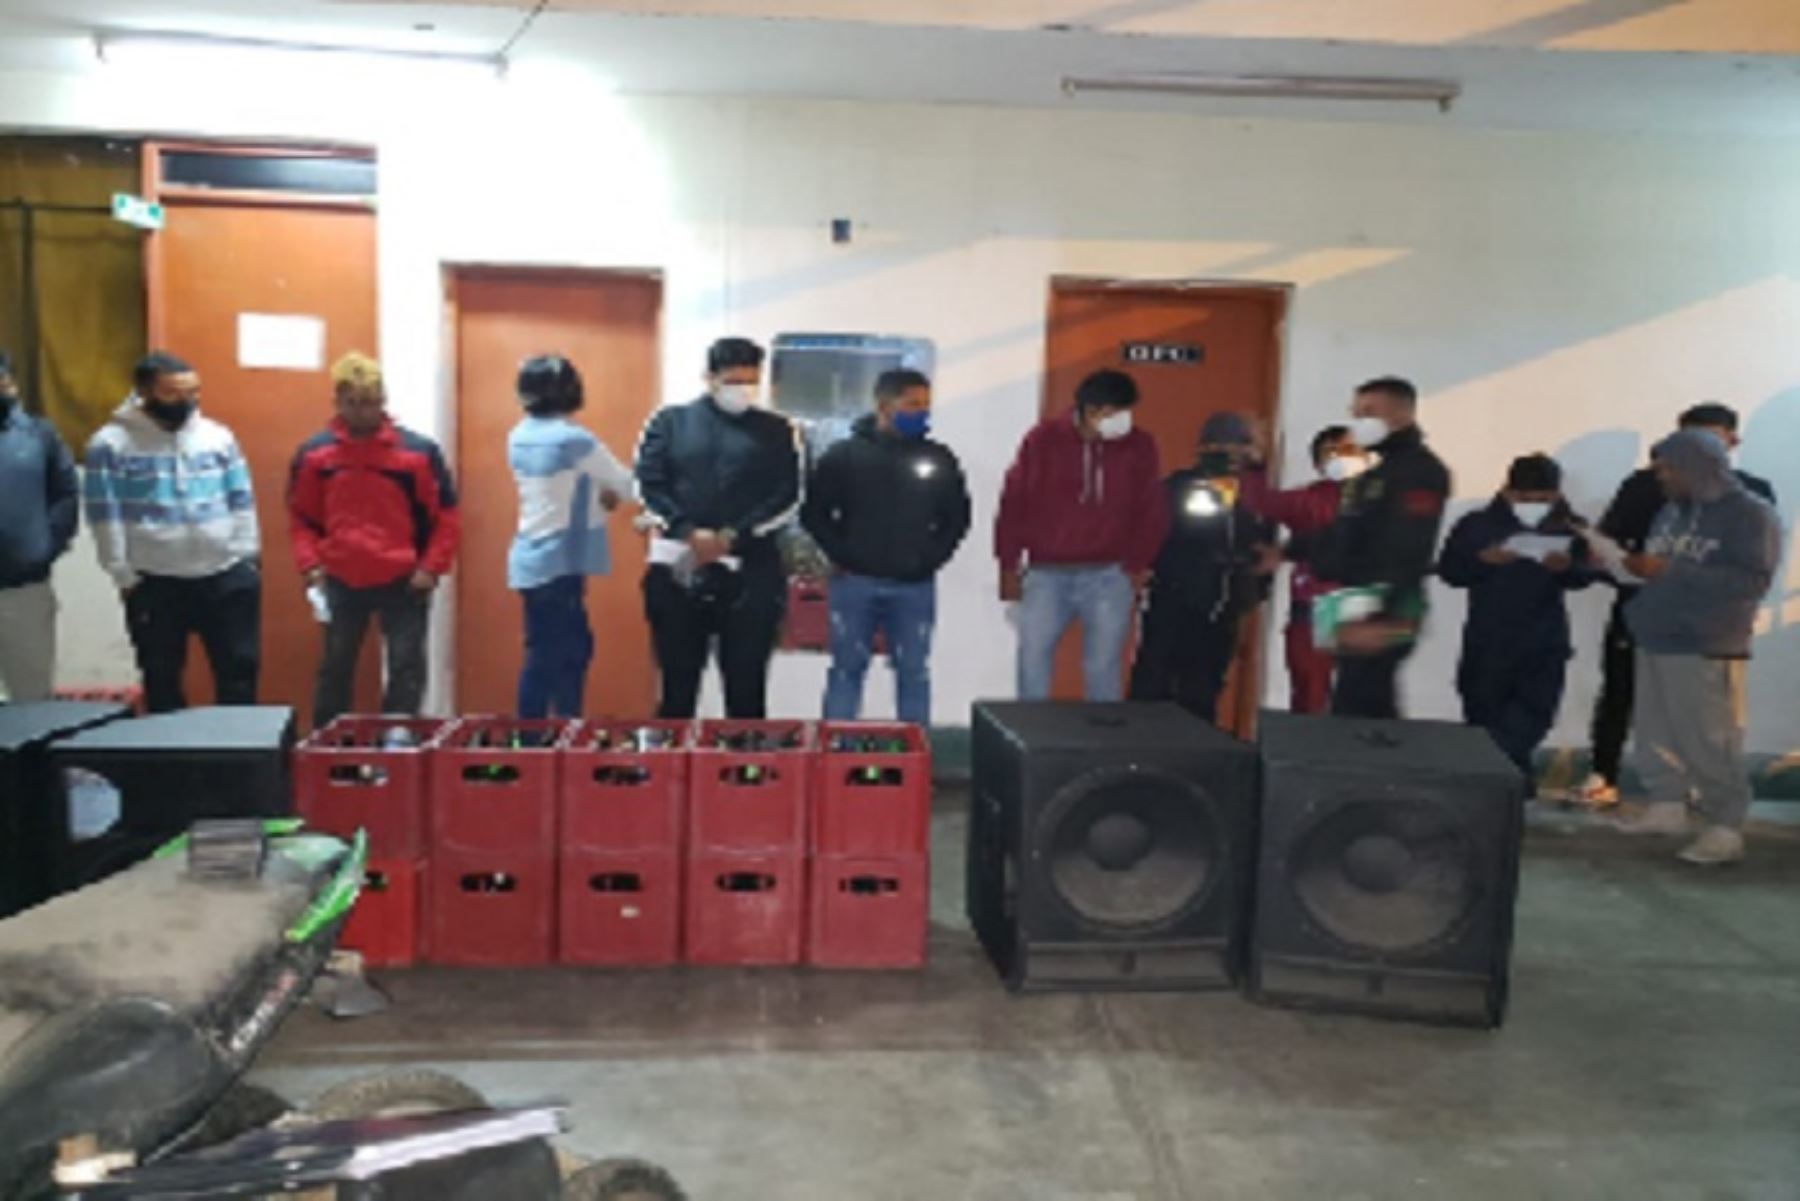 Agentes del Escuadrón de Emergencia de Chimbote detuvieron a 19 personas, entre hombres y mujeres, entre ellos miembros de la orquesta musical contratada para la celebración.